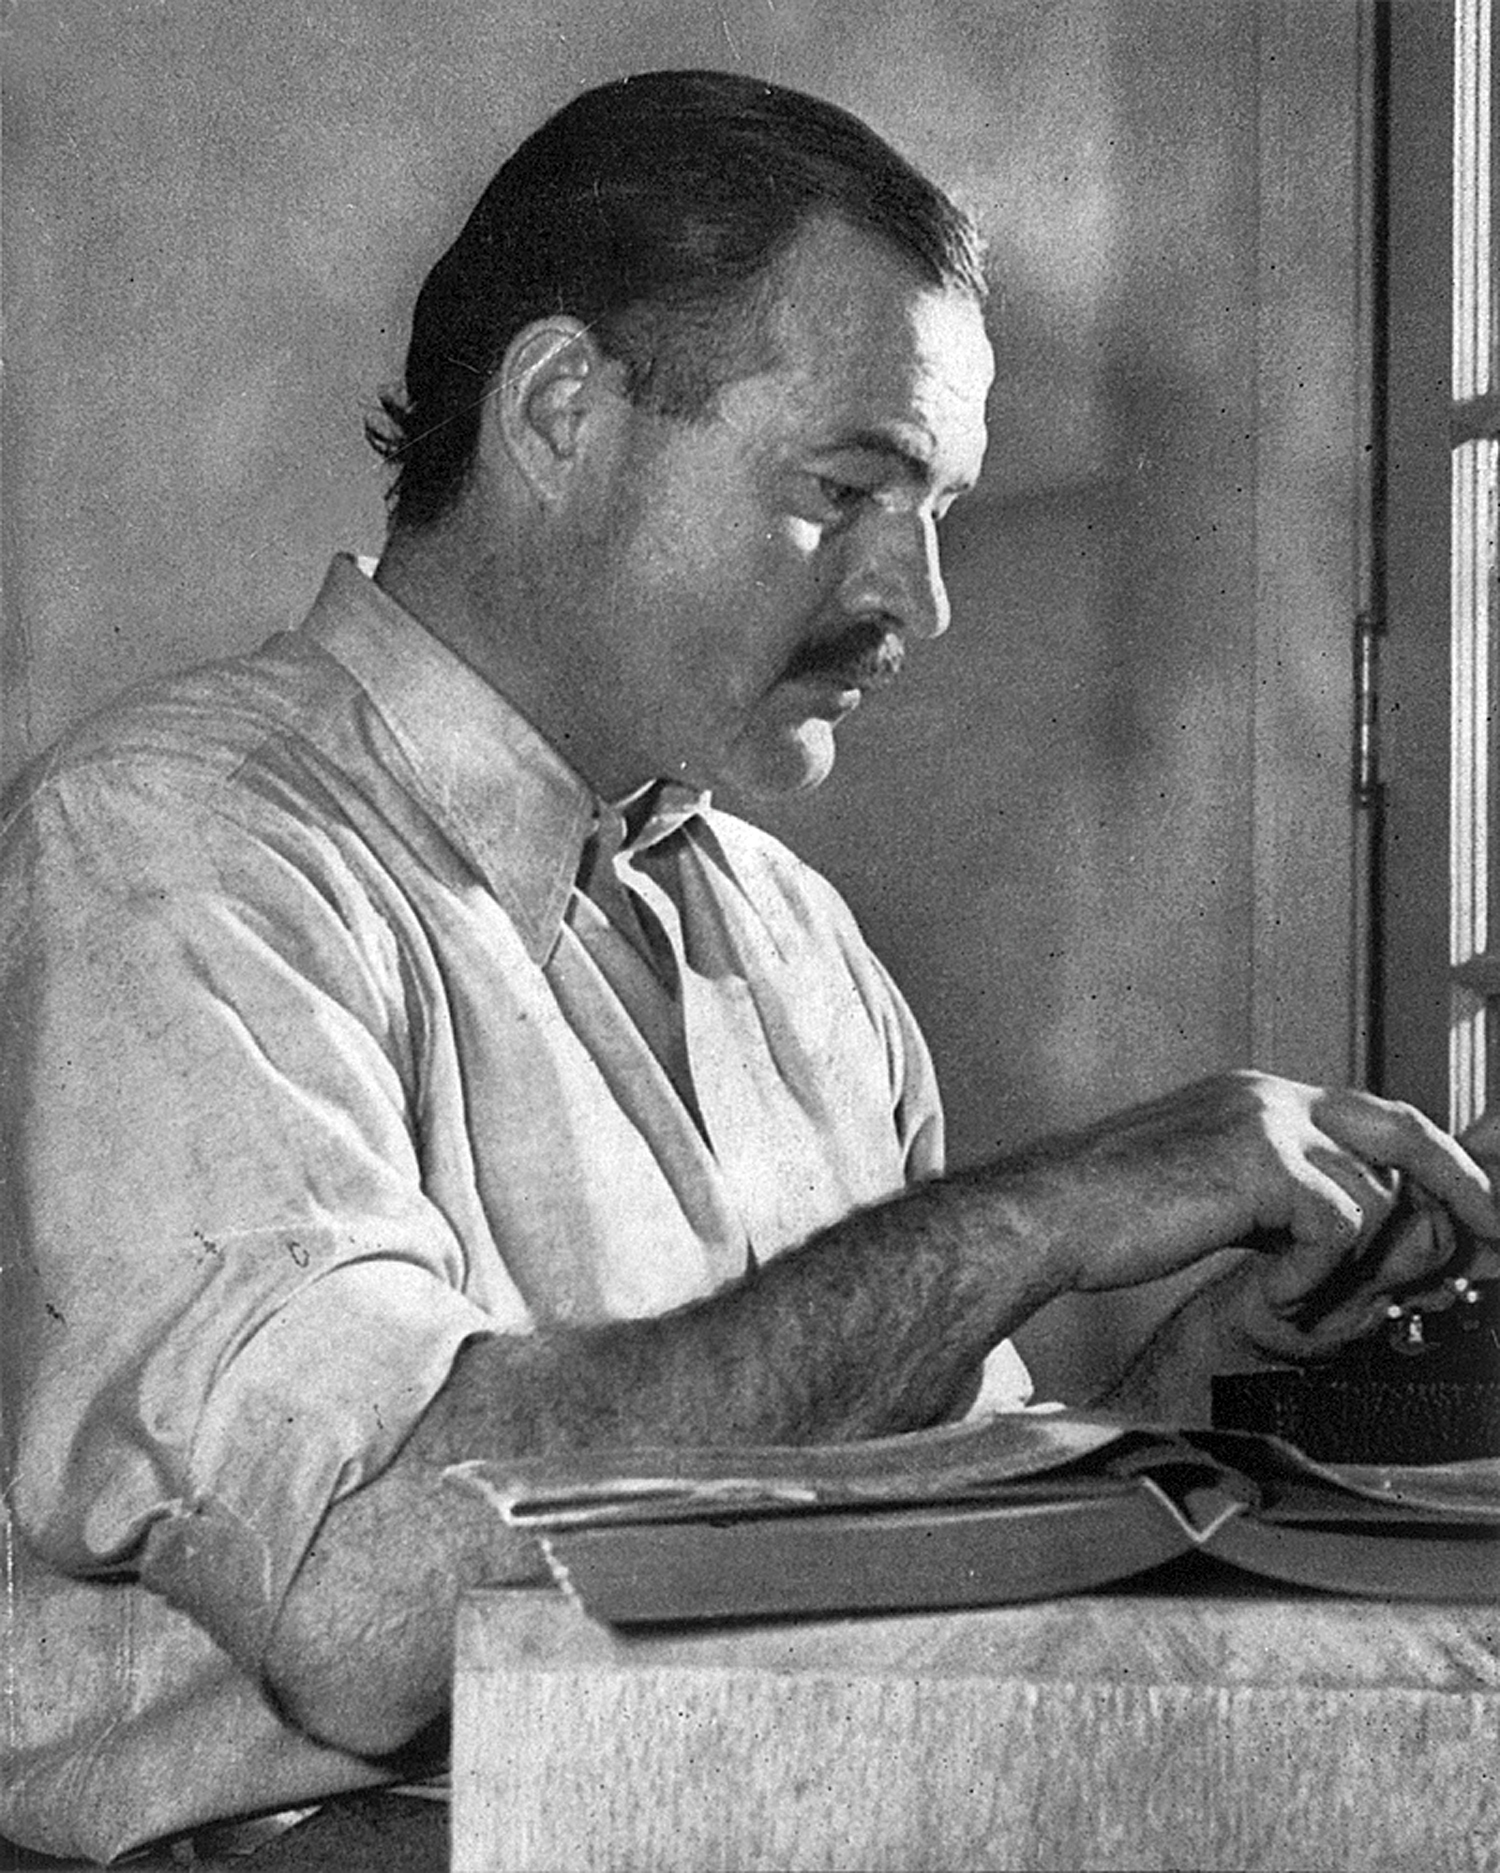 auteur Ernest Hemingway de la citation Je n'aime pas écrire comme Dieu. C'est seulement parce que vous ne le faites jamais, cependant, que les critiques pensent que vous ne pouvez pas le faire.